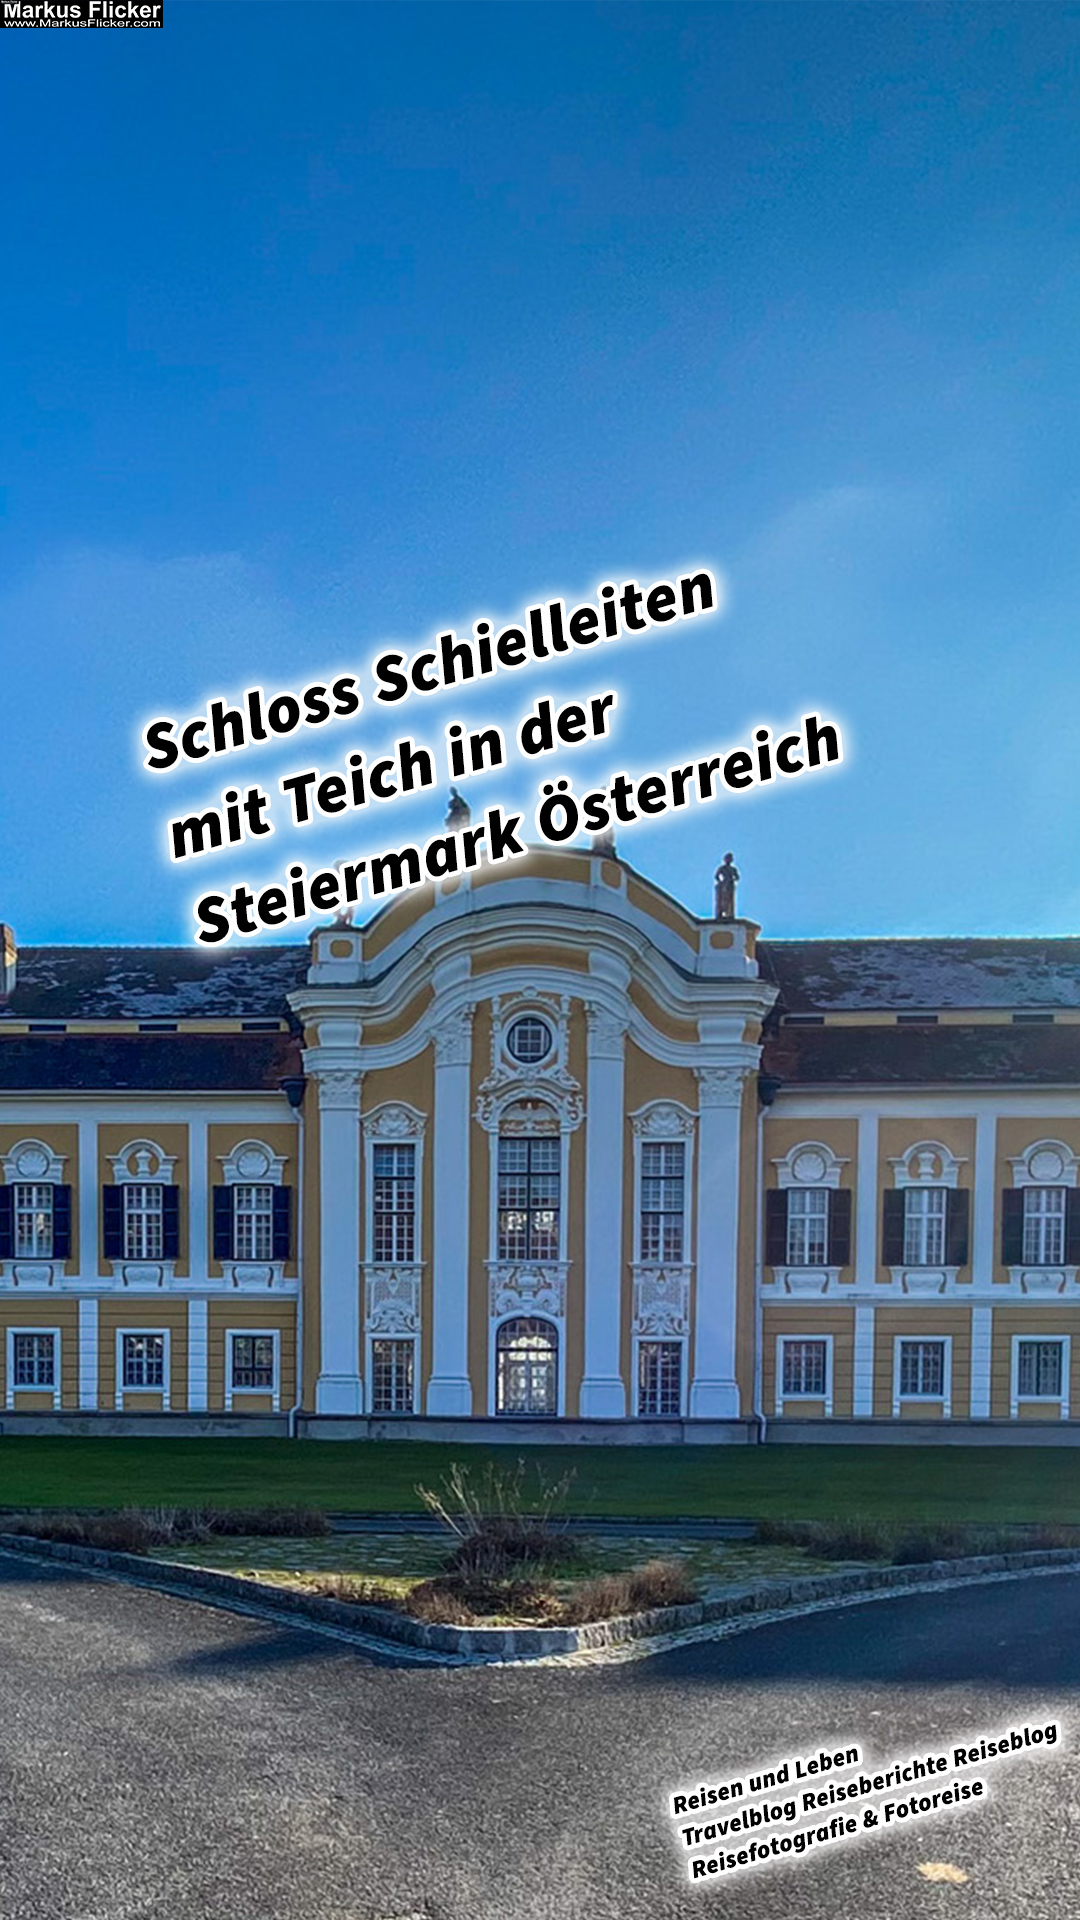 Schloss Schielleiten mit Teich in der Steiermark Österreich #visitstyria #visitaustria BSFZ Austrian Sports Resorts